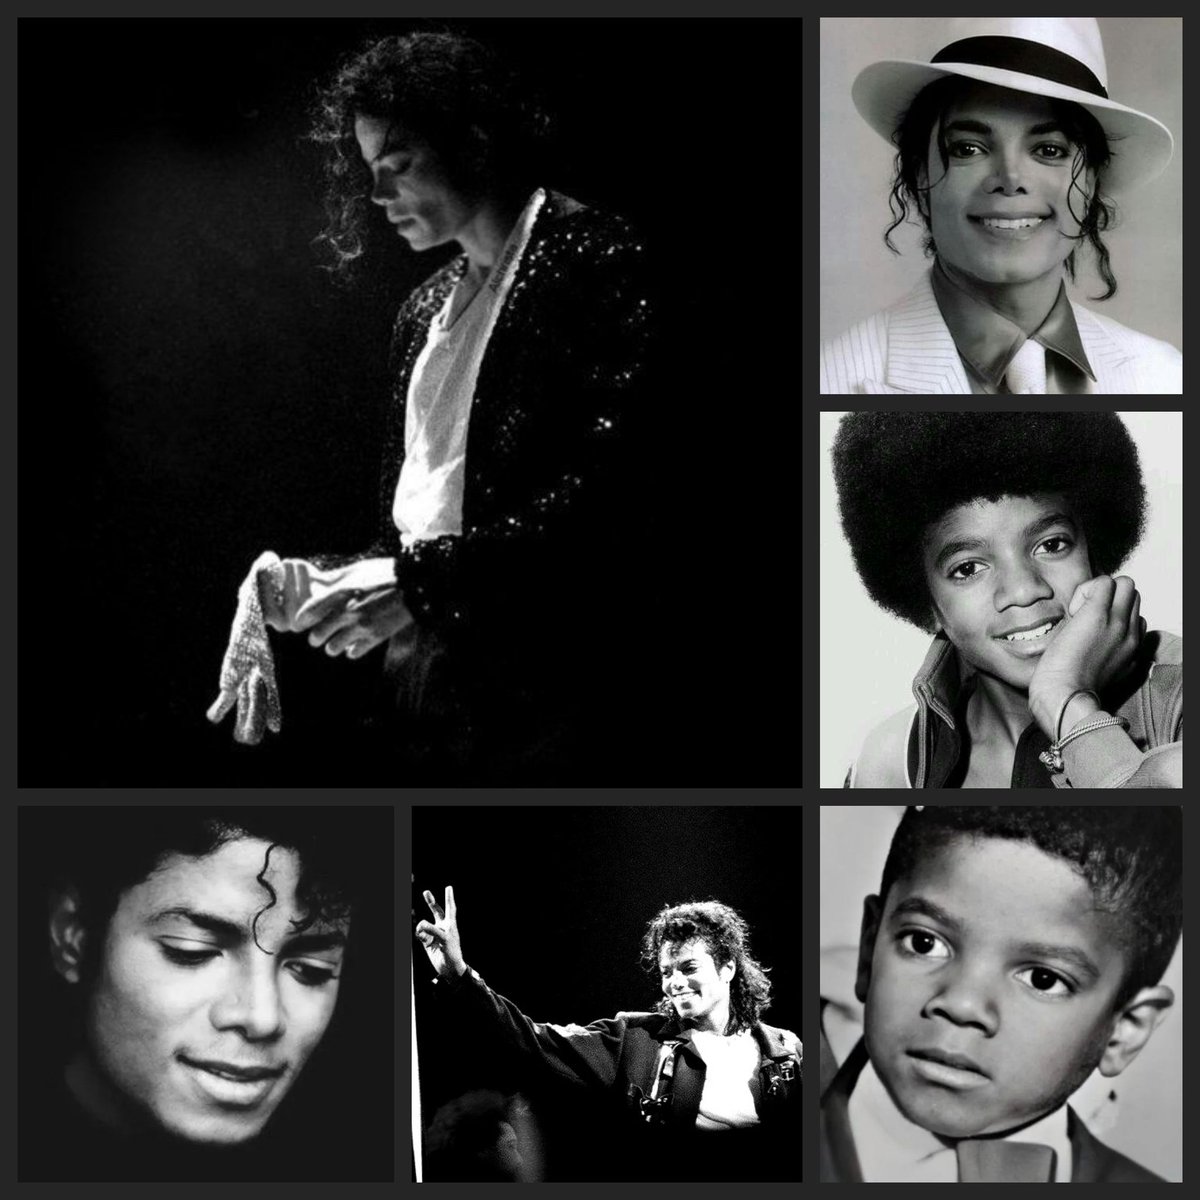 Hoy se cumplen 65 años del nacimiento de Michael Jackson la mayor estrella del mundo de la música. Se fue demasiado pronto. ❤ #MichaelJackson #HappyBirthdayMichaelJackson #CelebrateMichaelJackson #MJFam